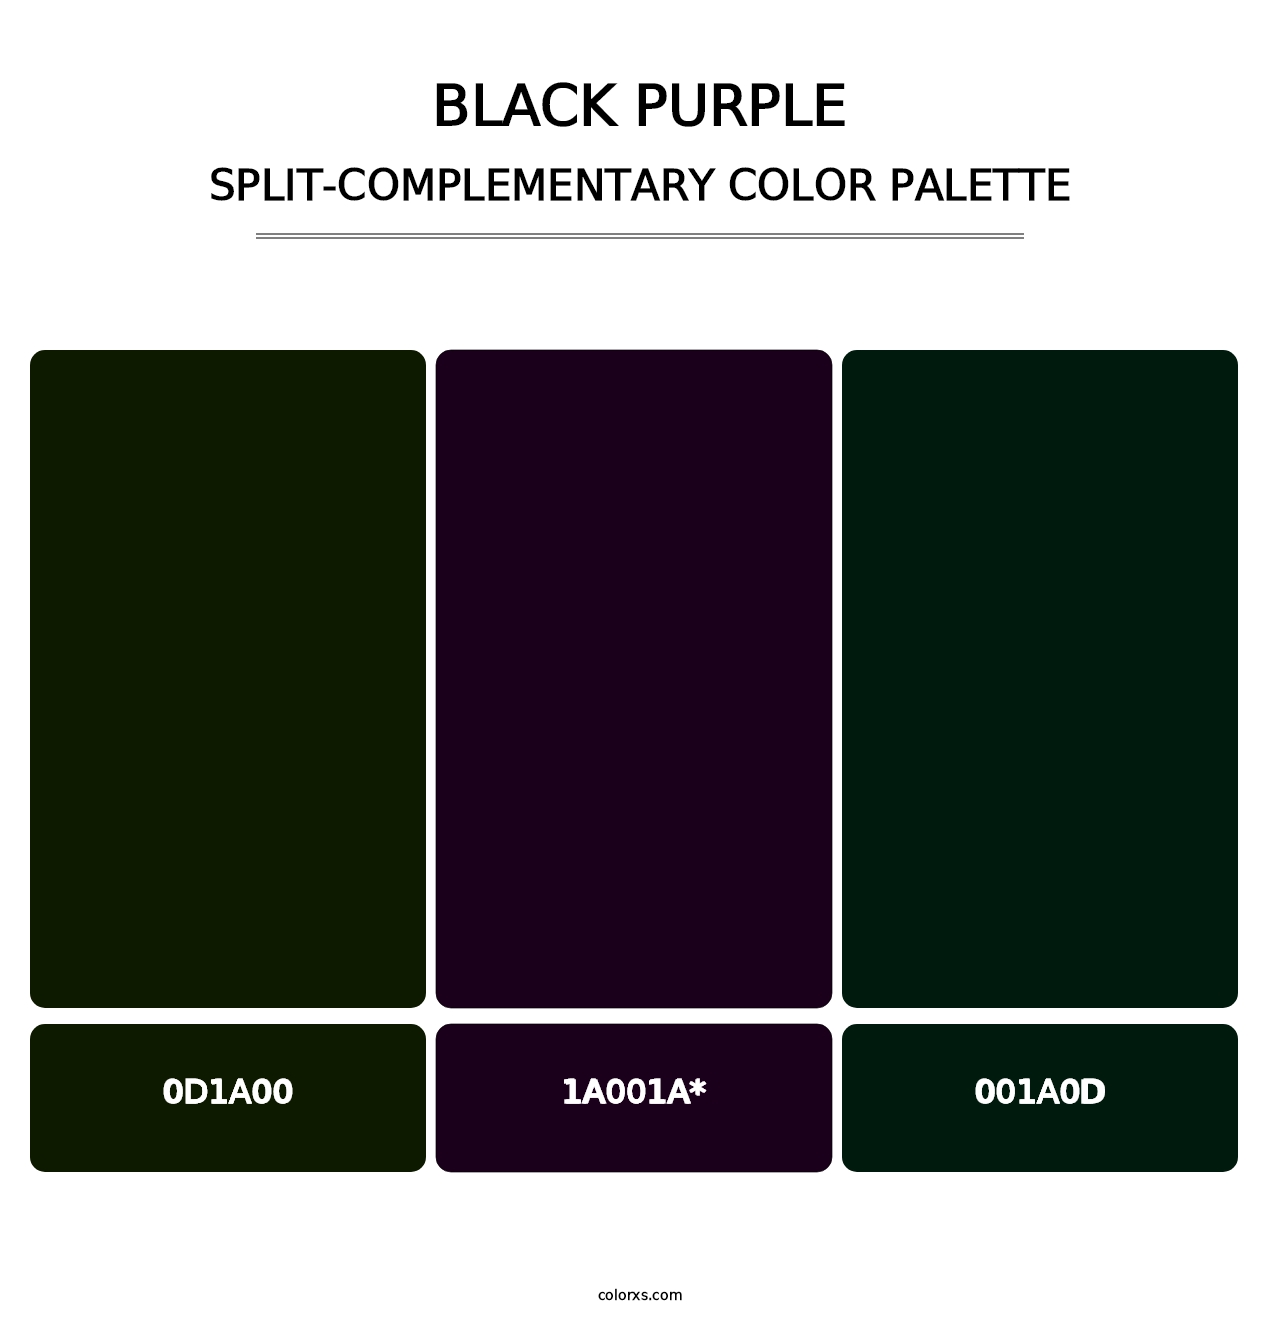 Black Purple - Split-Complementary Color Palette